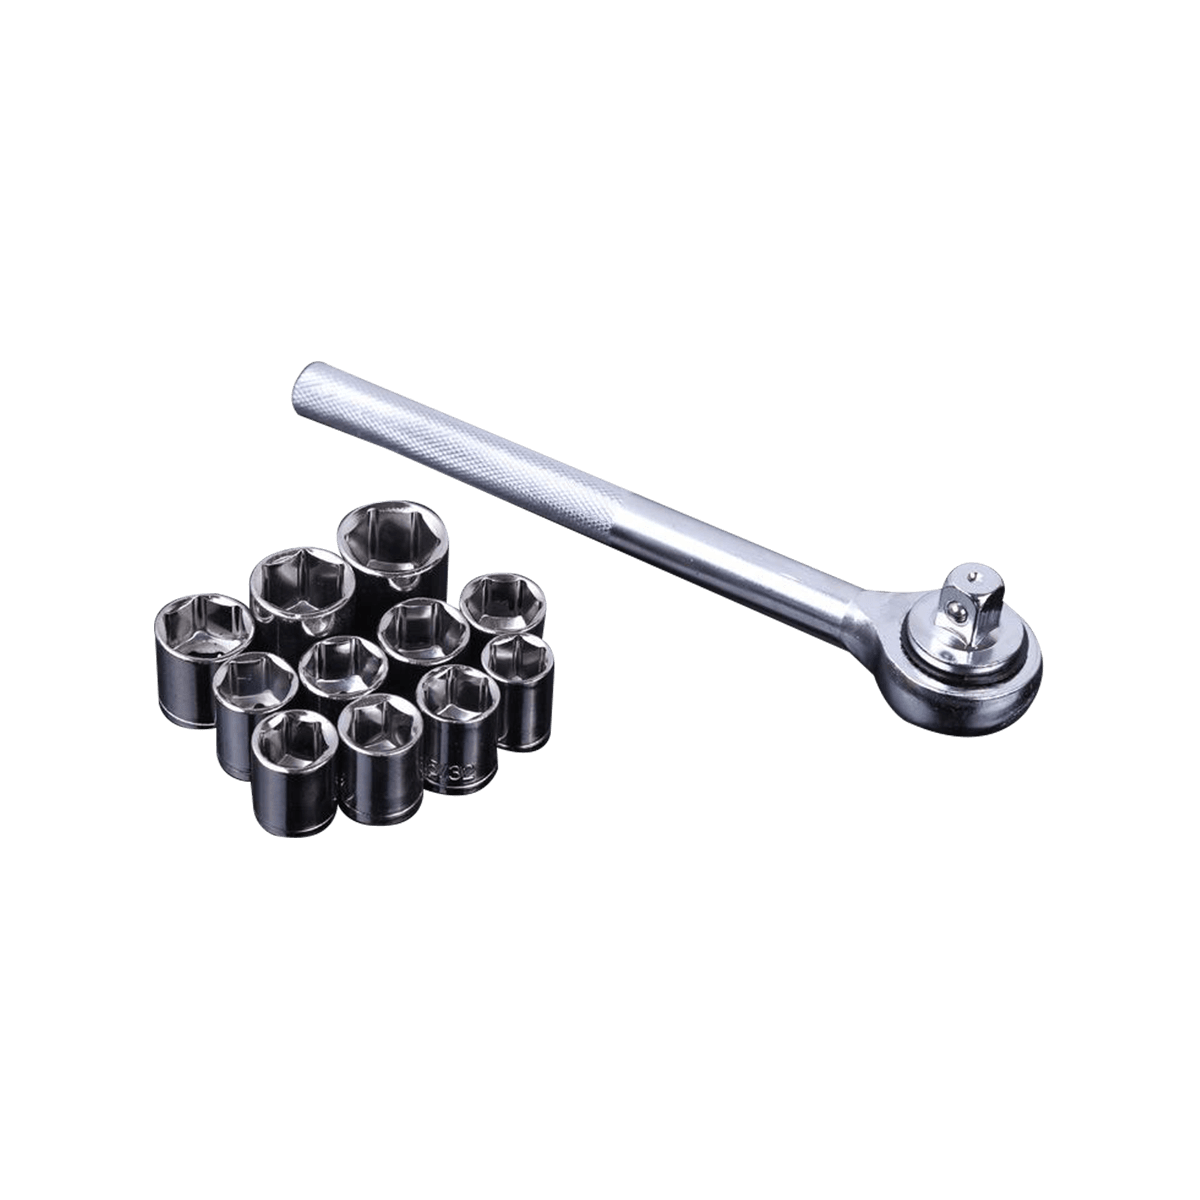 40 PCS Socket Wrench Kit Alat Perbaikan Sepeda Motor Ratchet Spanner Combo Alat Kit Set Alat Perbaikan Mobil